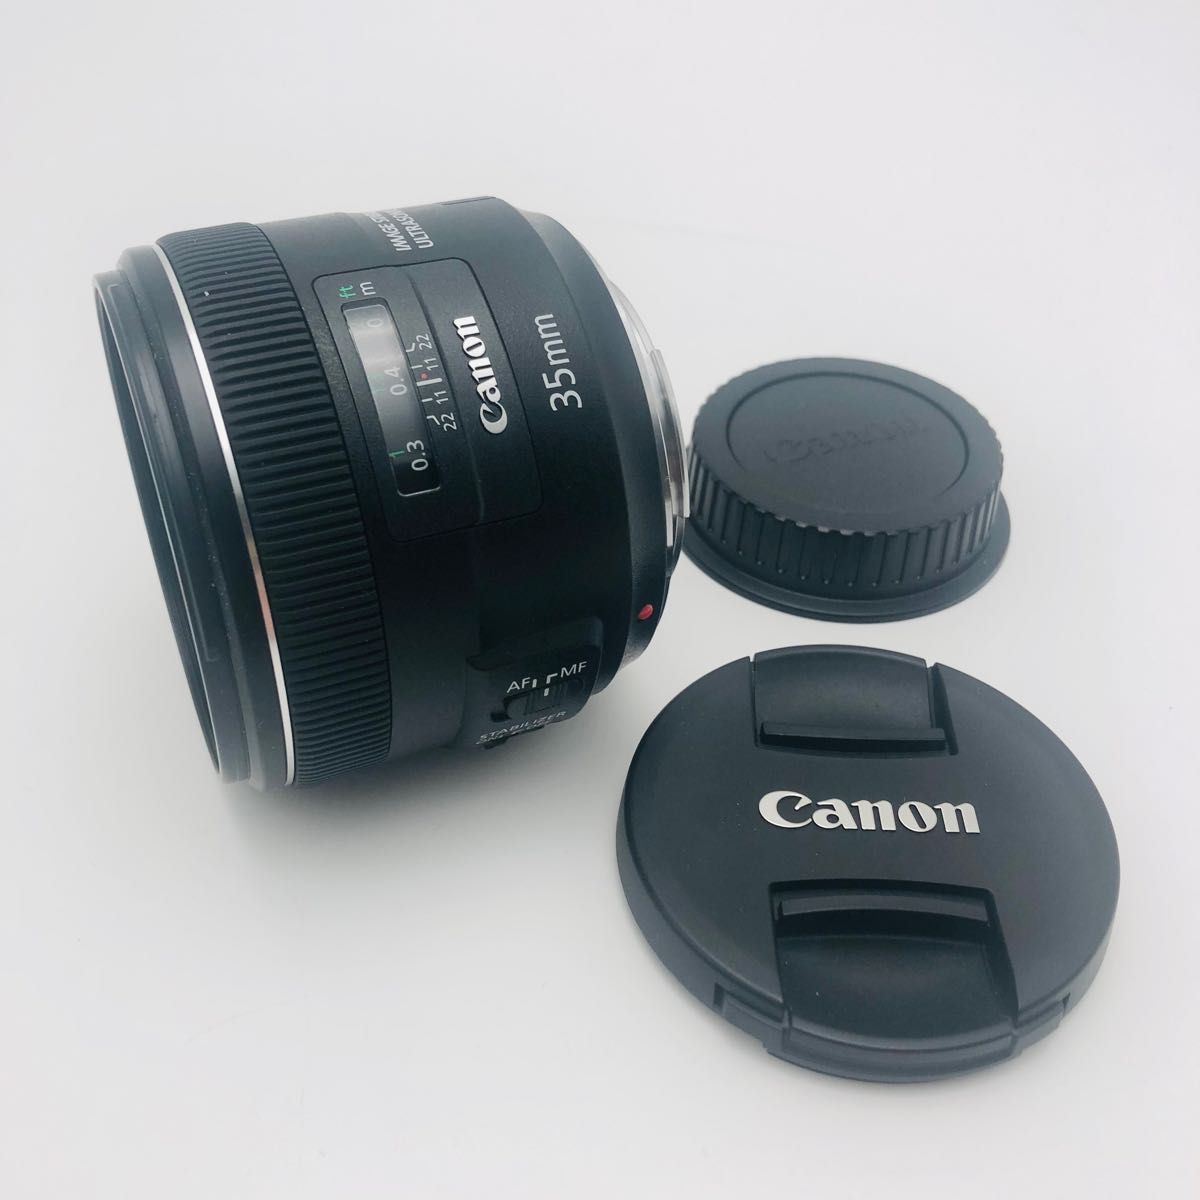 Canon キヤノン EF35mm F2 USM 単焦点レンズ フロントキャップ リア